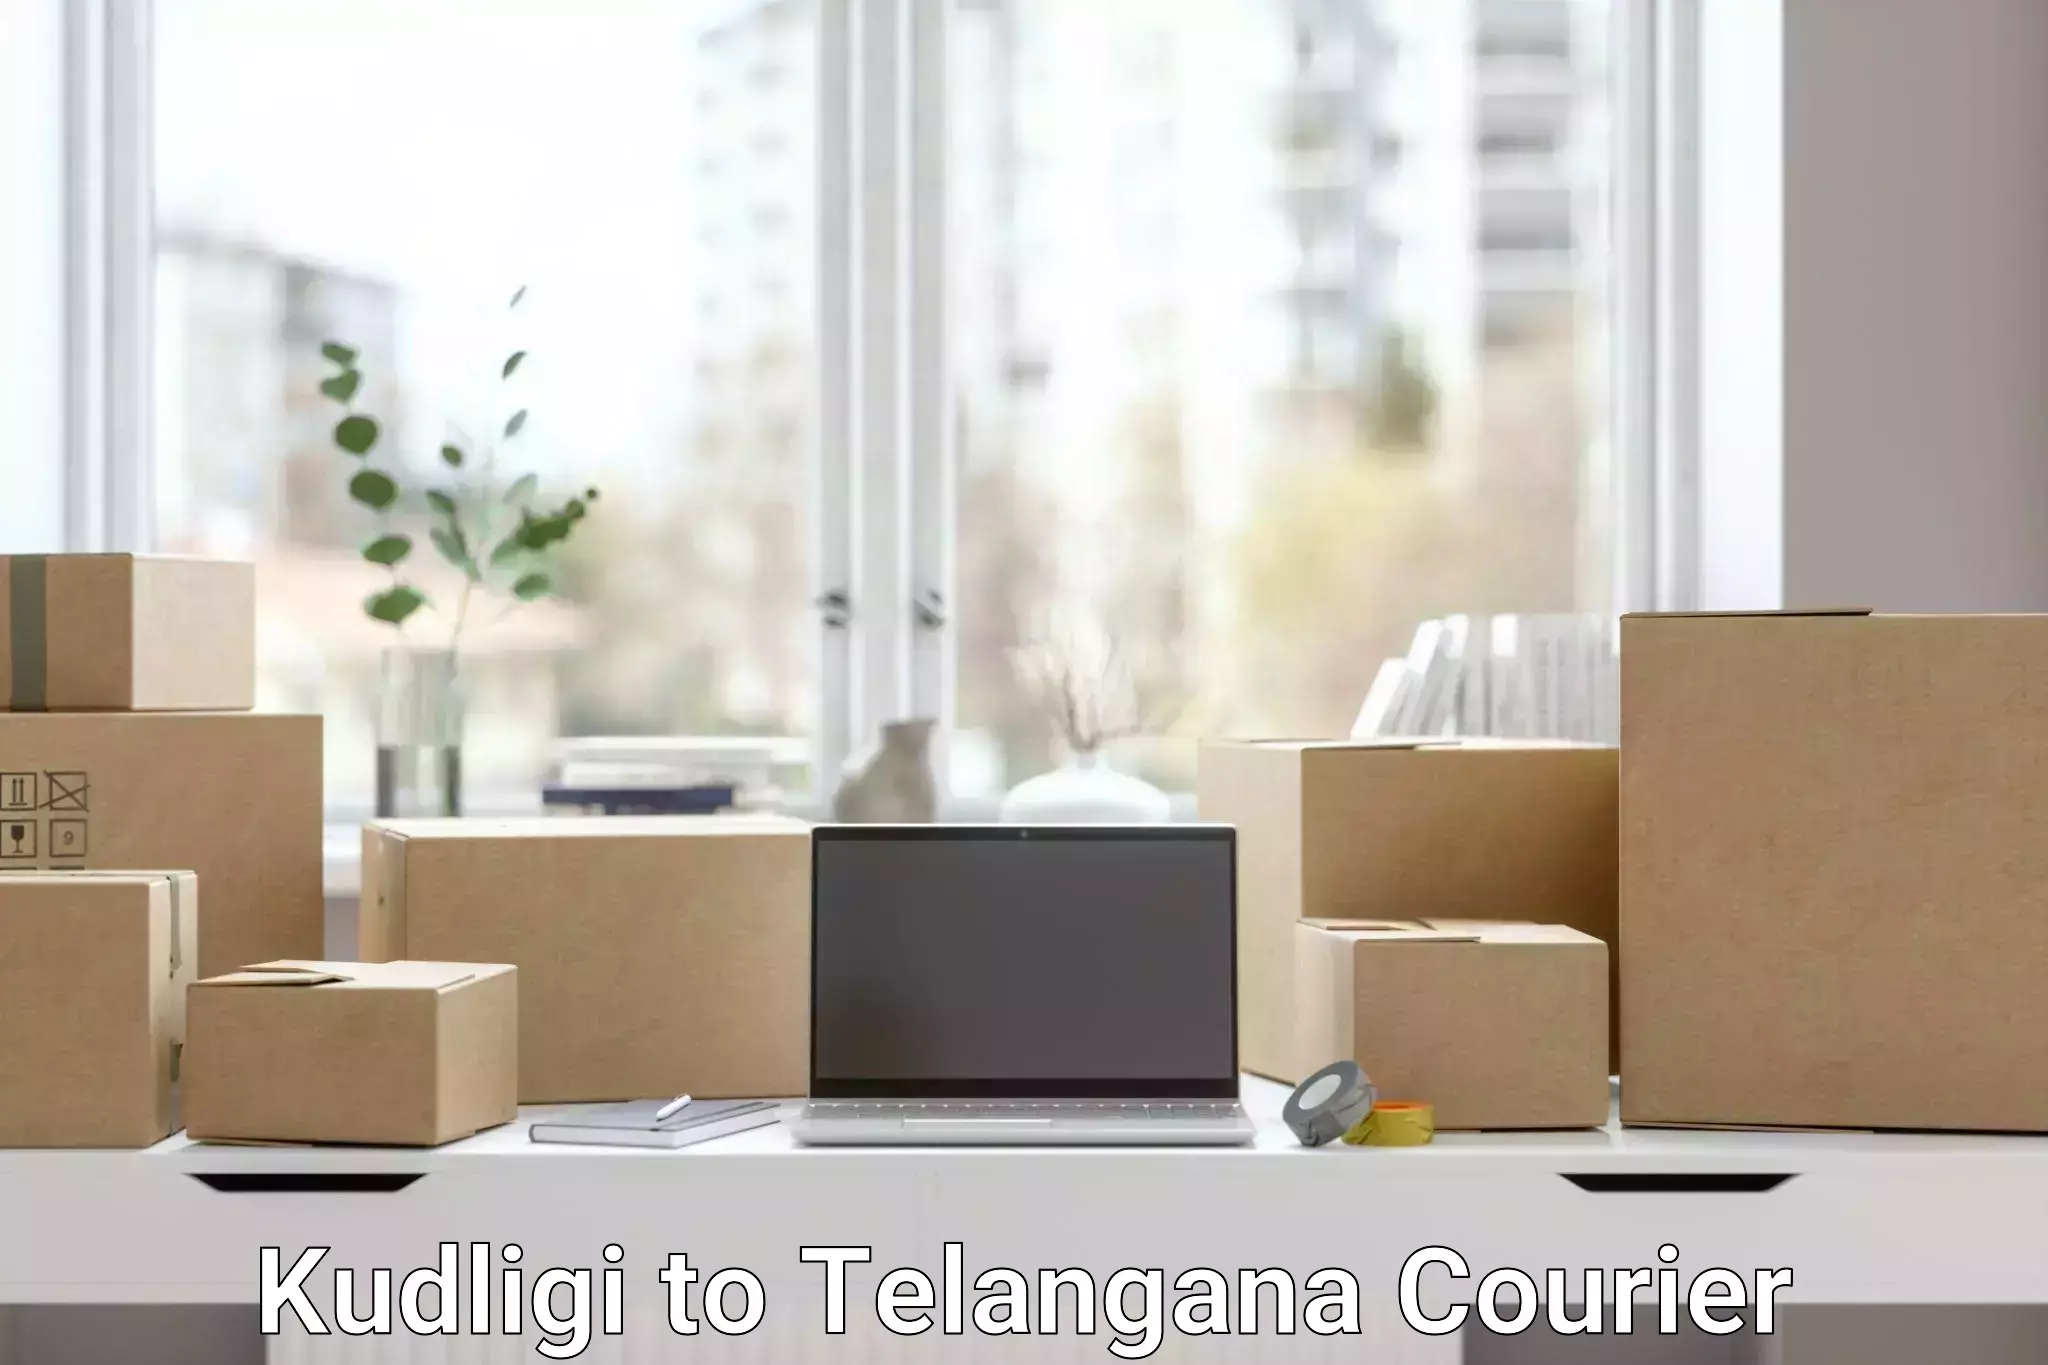 Efficient package consolidation Kudligi to Telangana